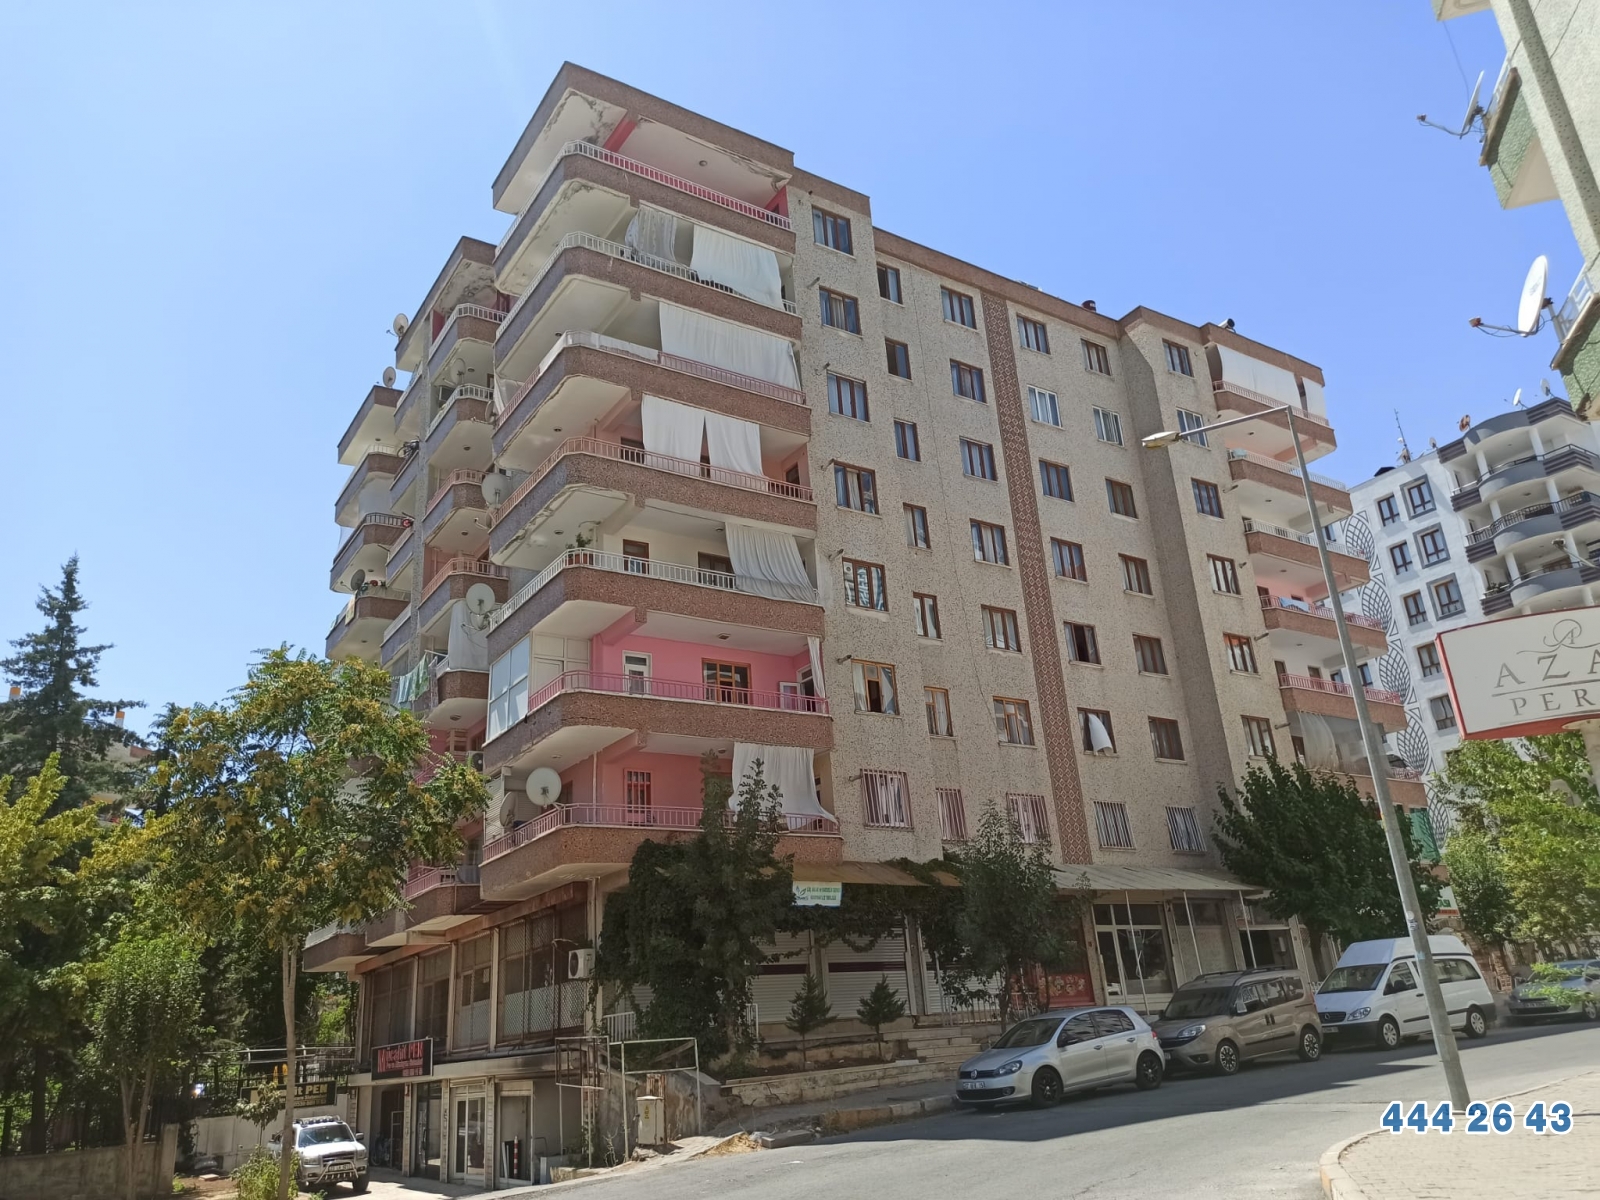 Burgan Bank'tan Diyarbakır Kayapınar'da 104 m² Dükkan